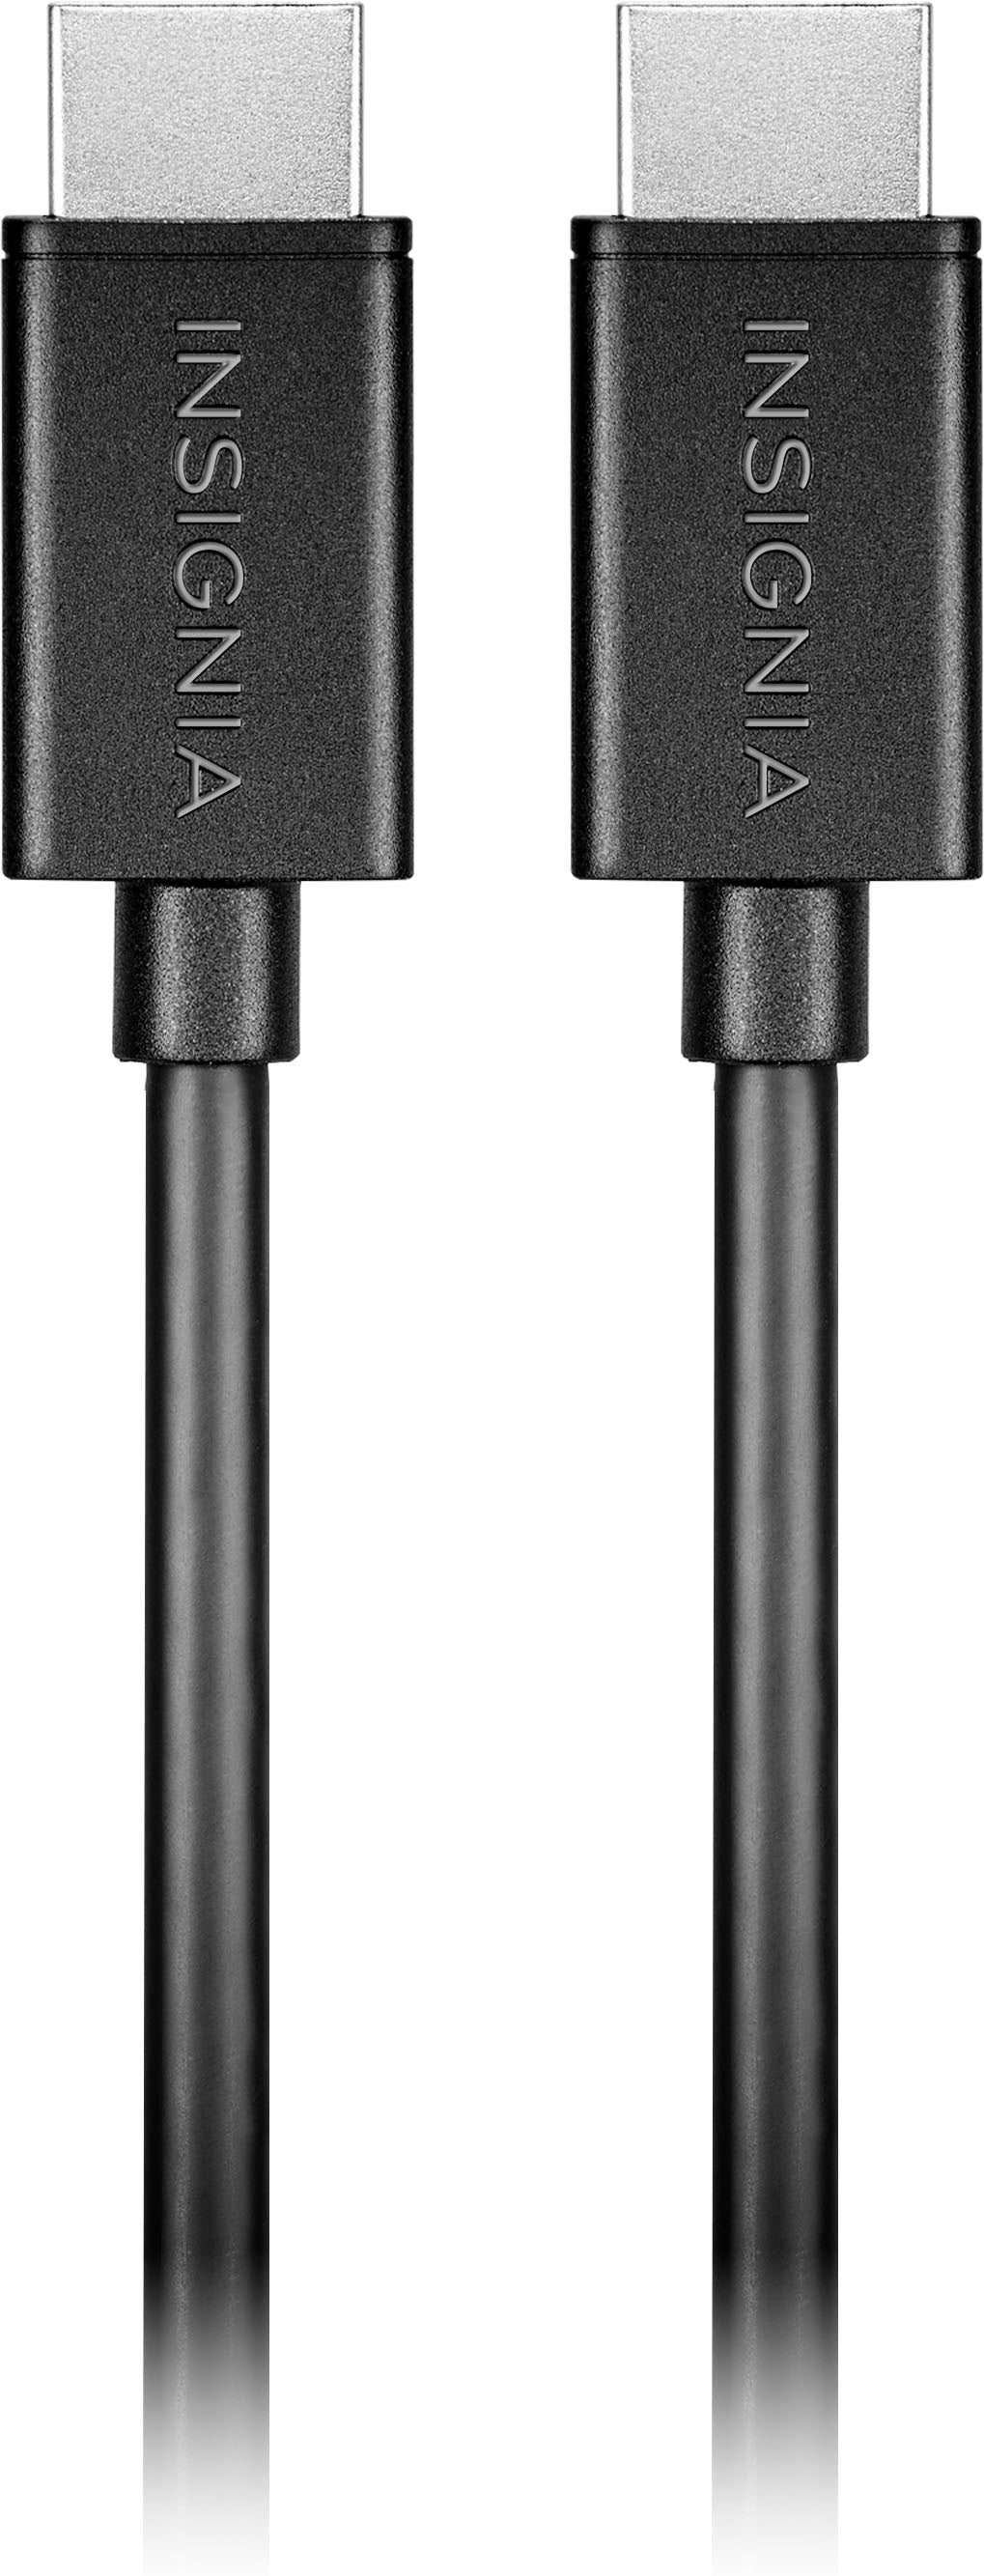 Insignia™ - 8' 4K Ultra HD HDMI Cable - Black_0